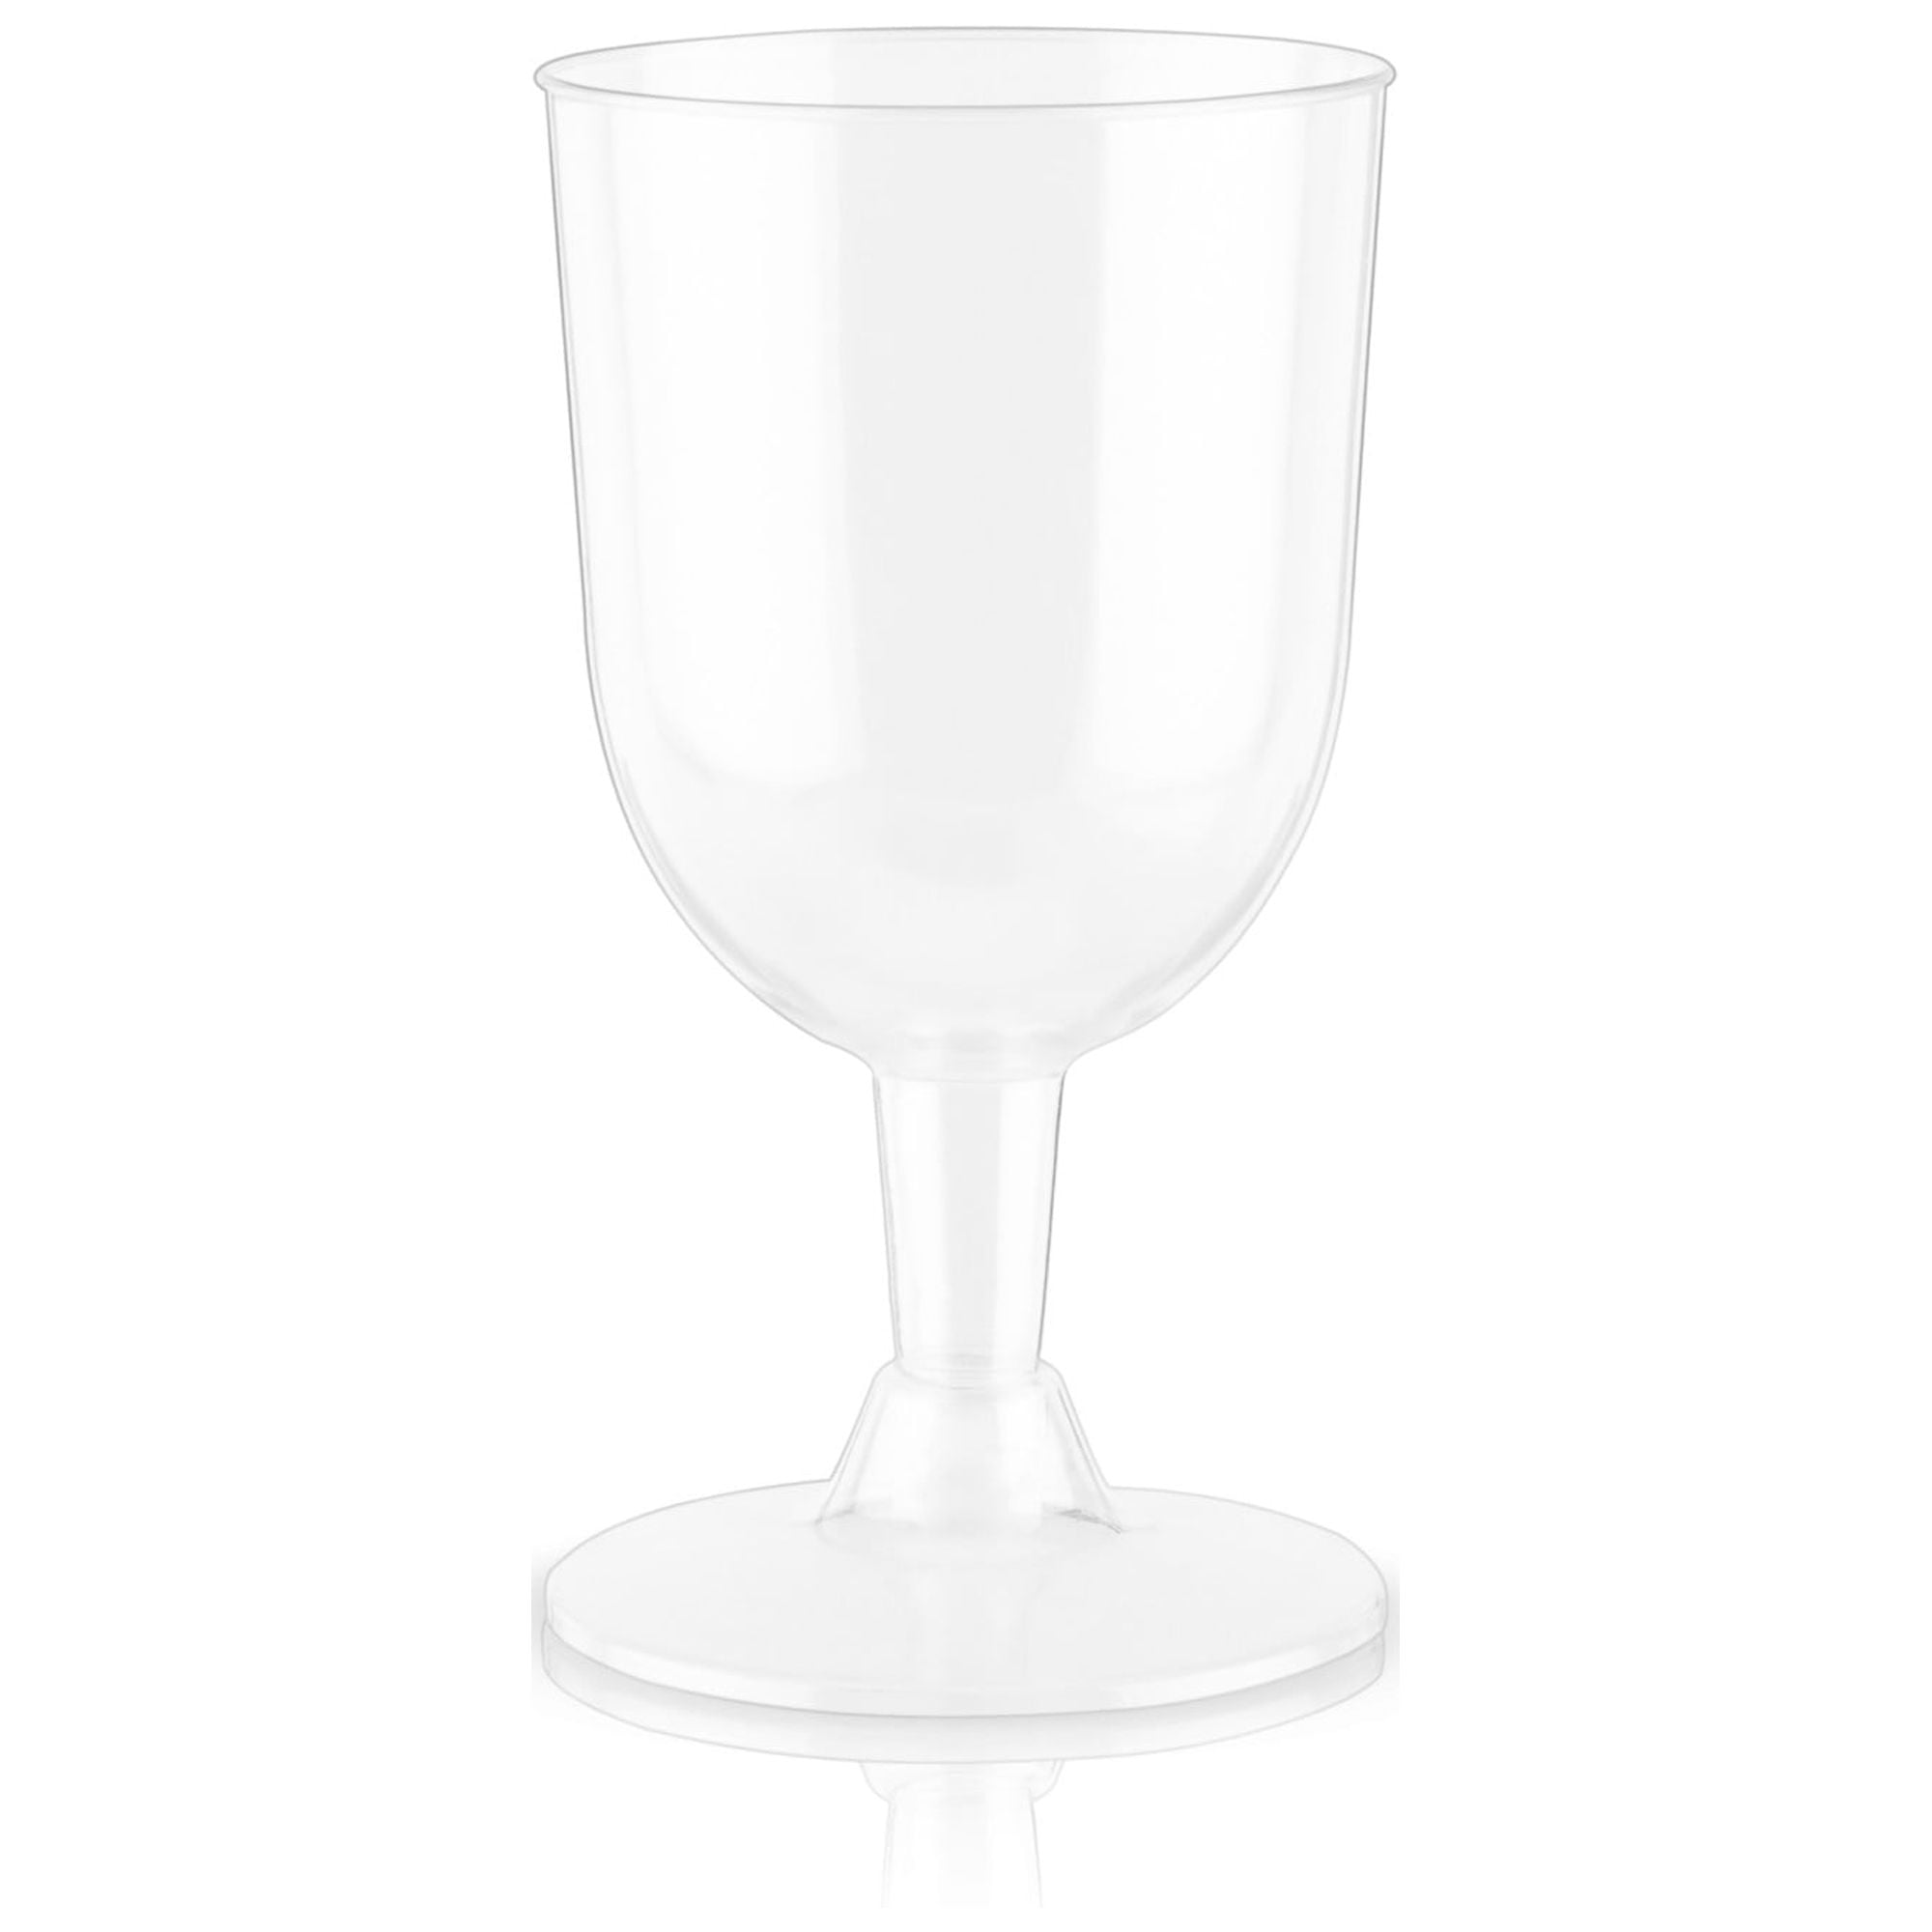 6PCS/set Disposable Plastic Wine Glasses Clear Stemmed Plastic